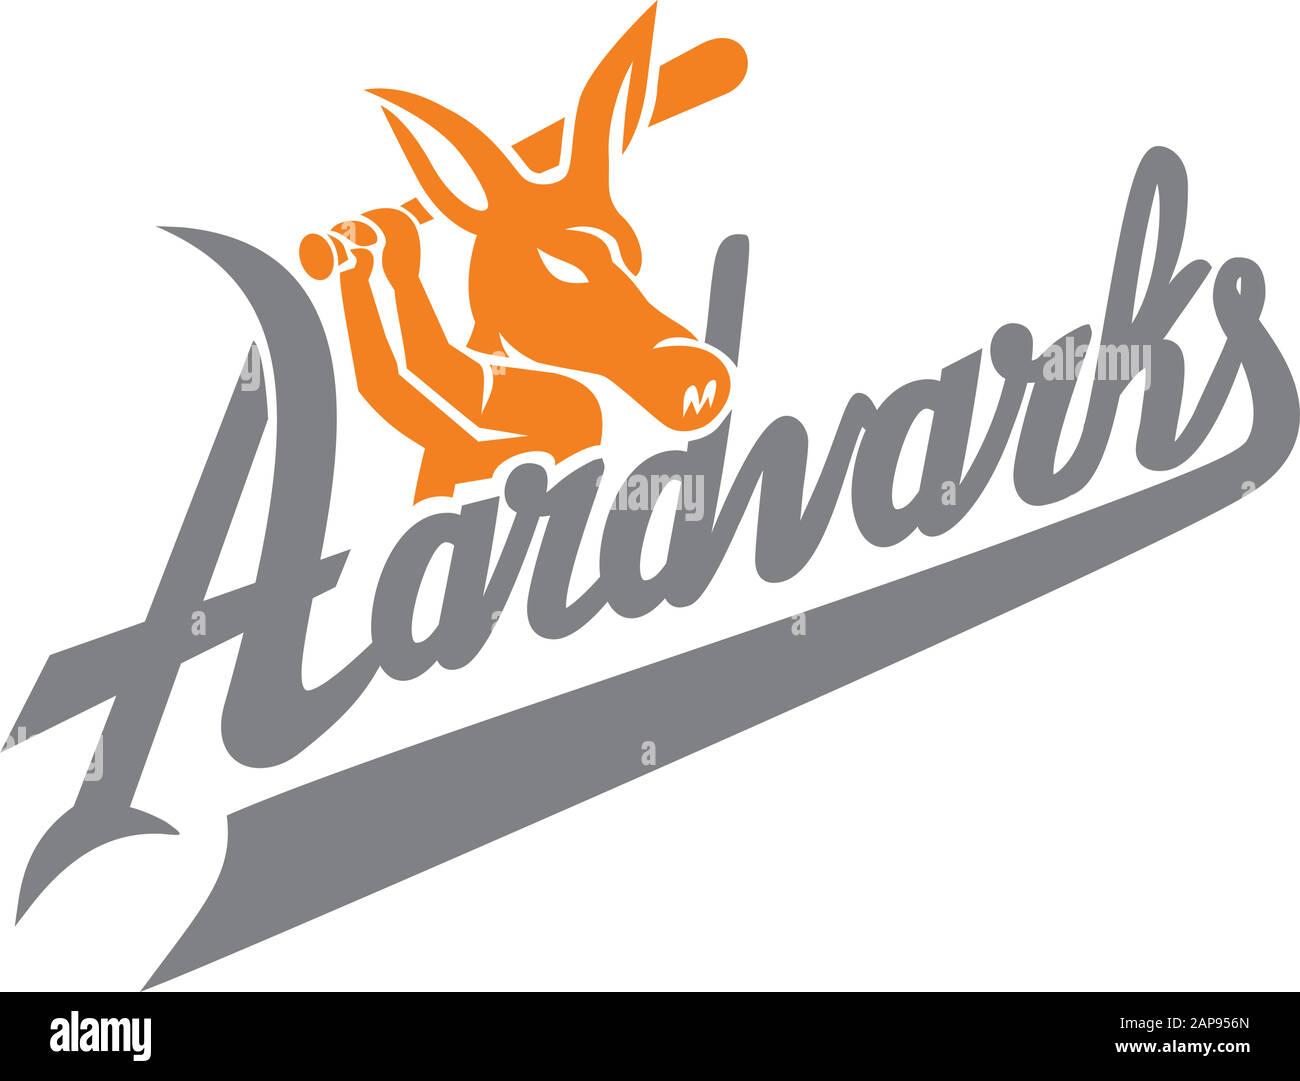 Illustration de l'icône mascotte d'un joueur de base-ball aardvark avec batting de chauve-souris avec le texte de script 'Aardvarks' vu de côté sur un arrière-plan isolé en rétro Illustration de Vecteur